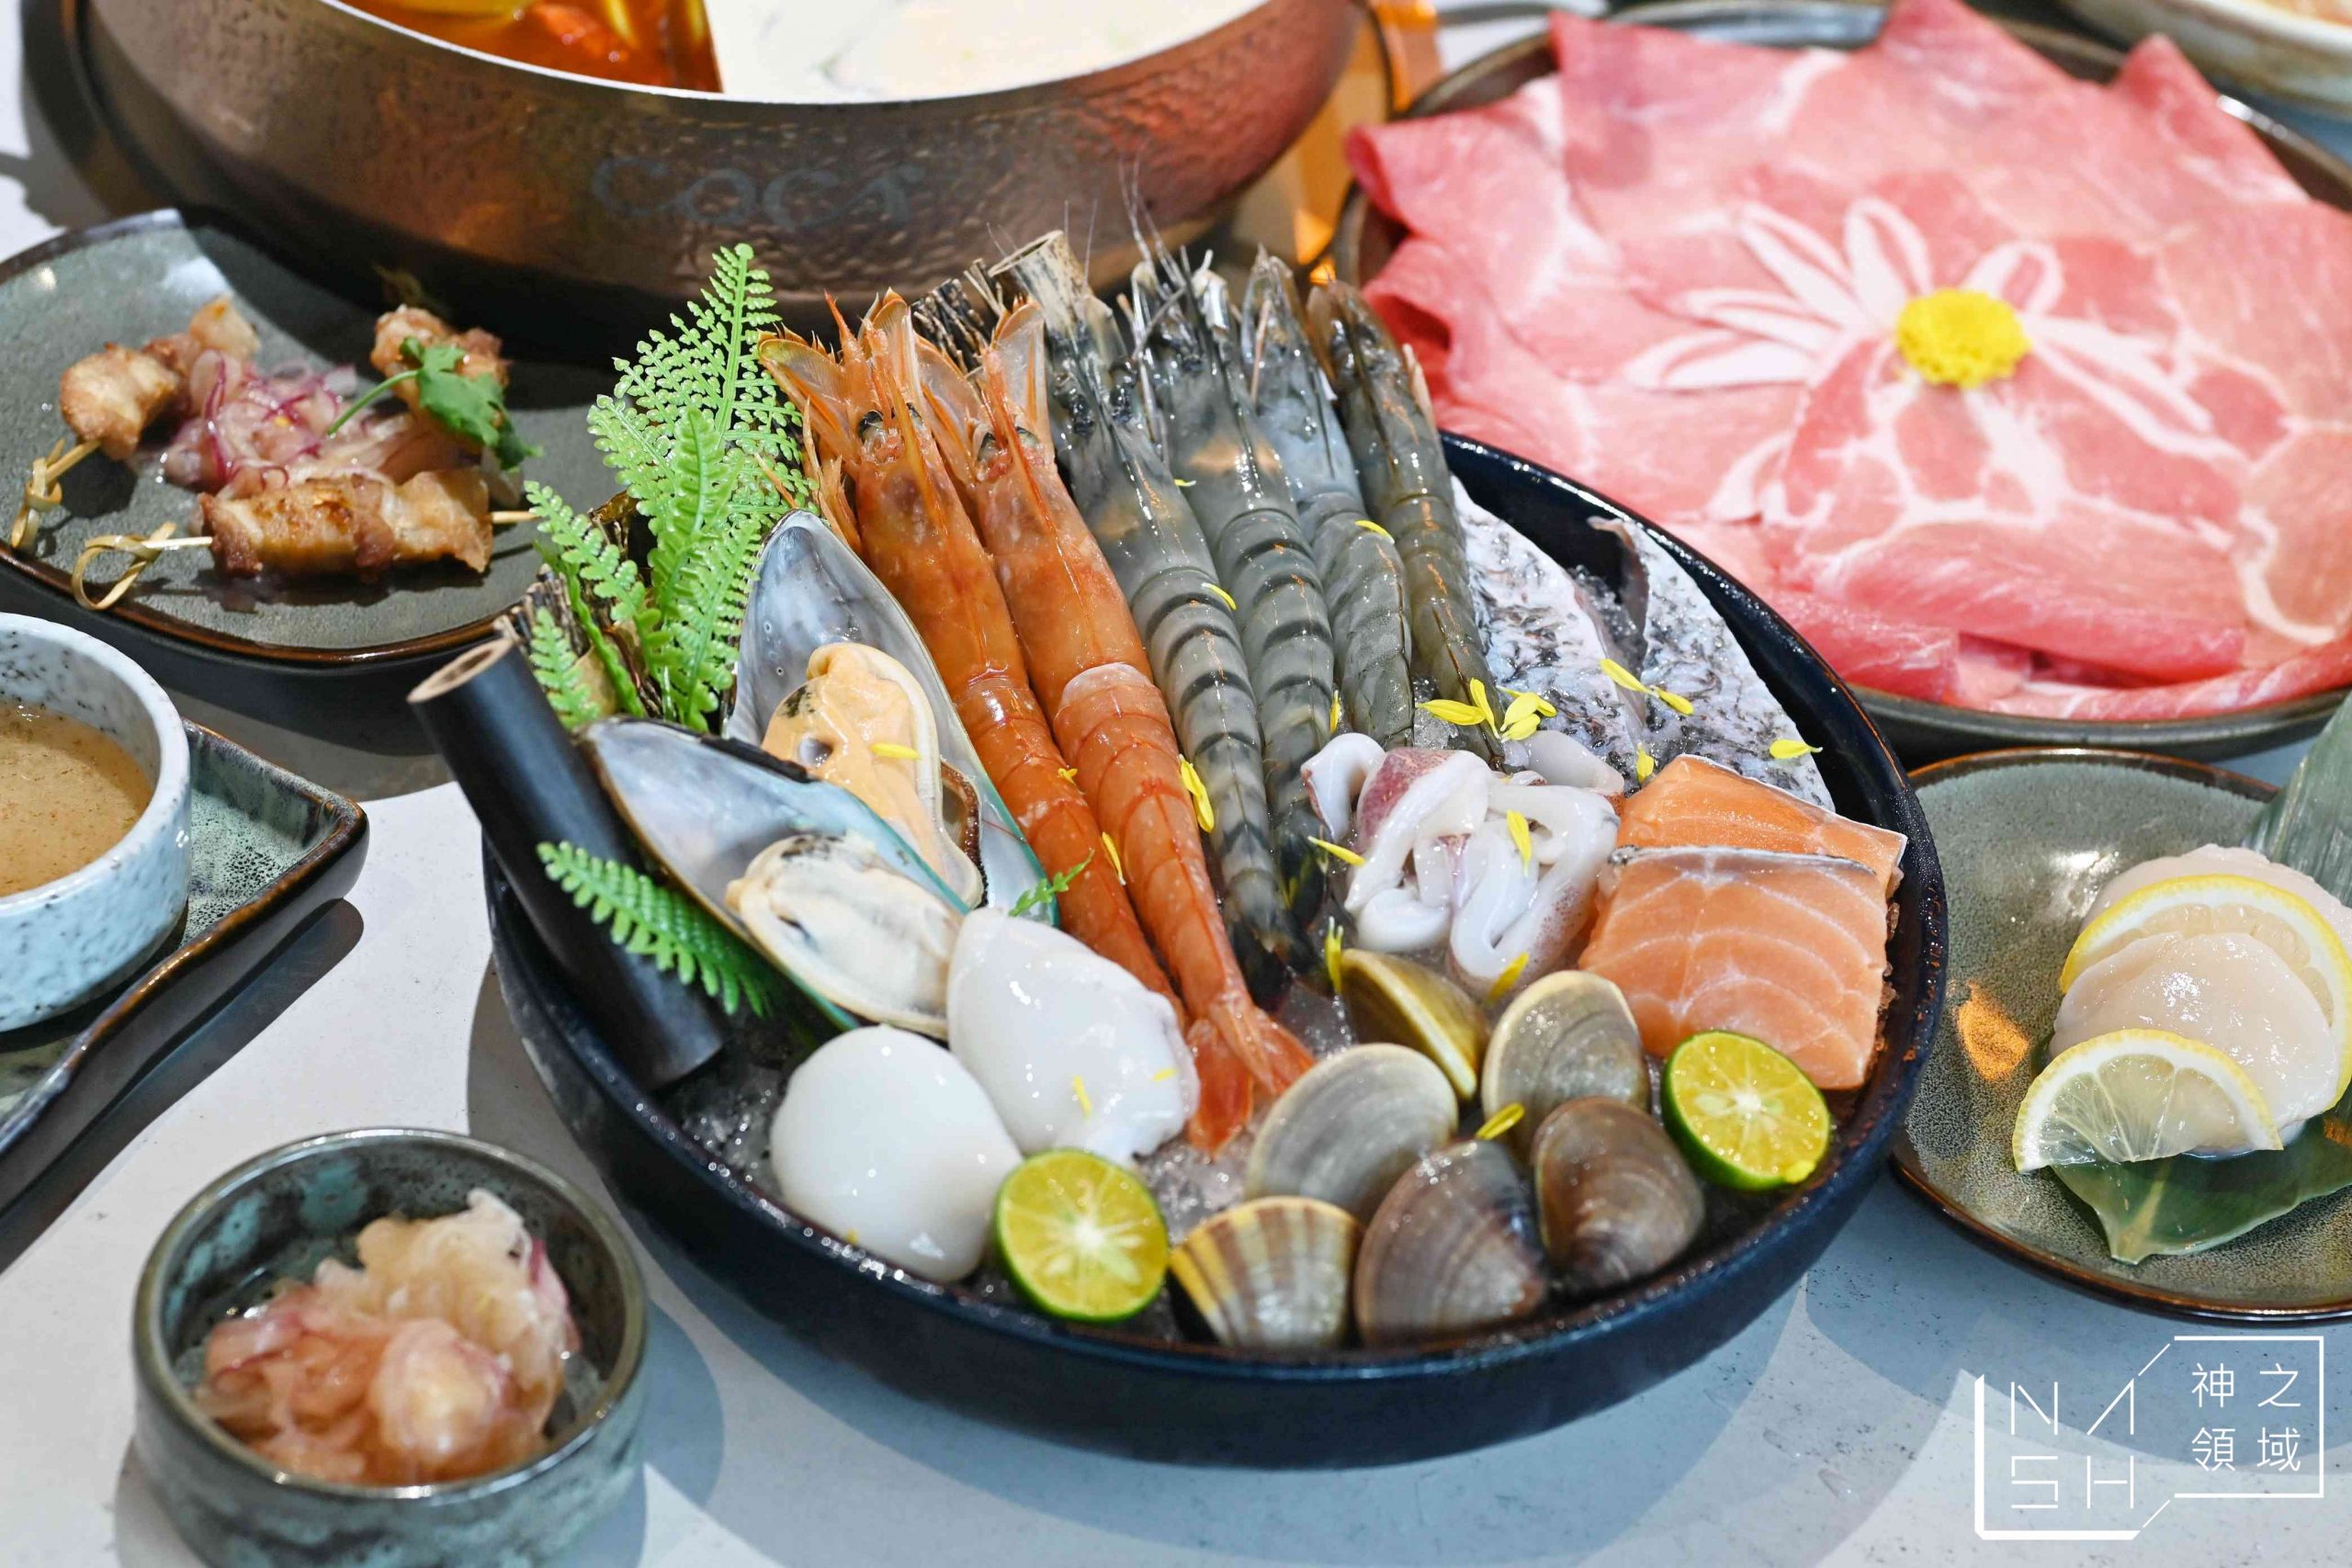 COCA泰式海鮮火鍋